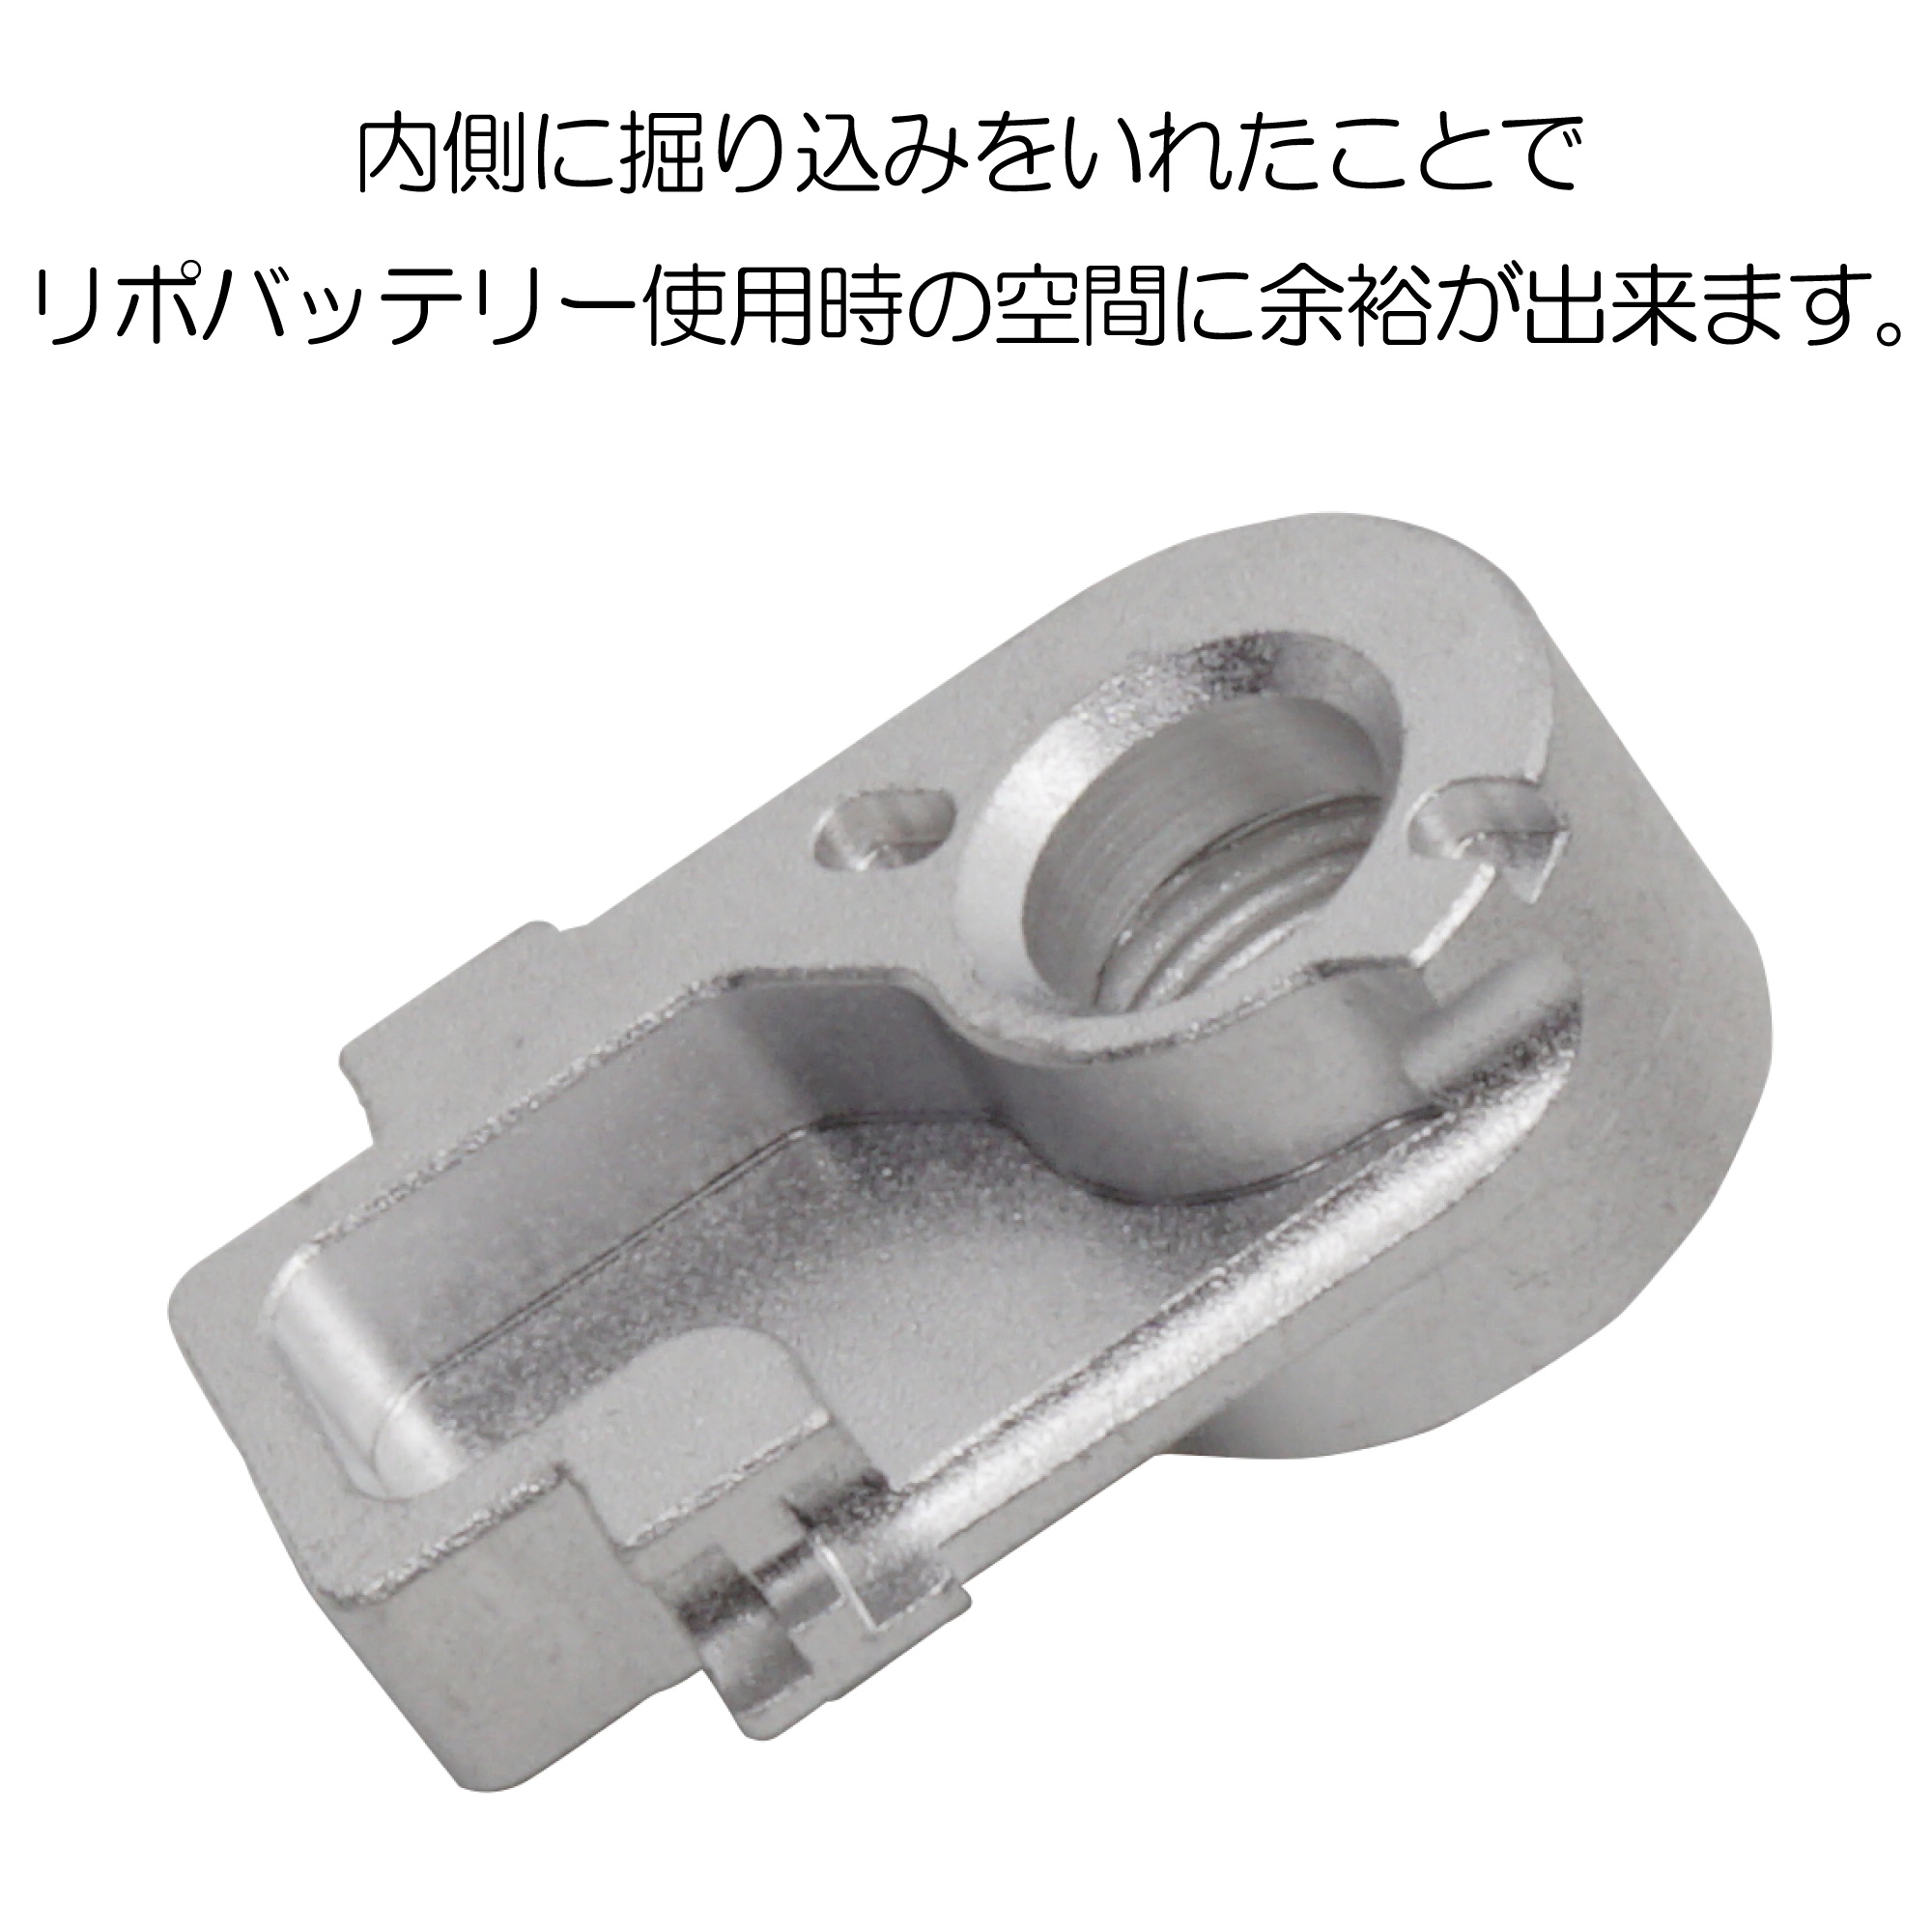 11mm正ネジサイレンサーアダプター 東京マルイ ハイキャパE用 | DCI 